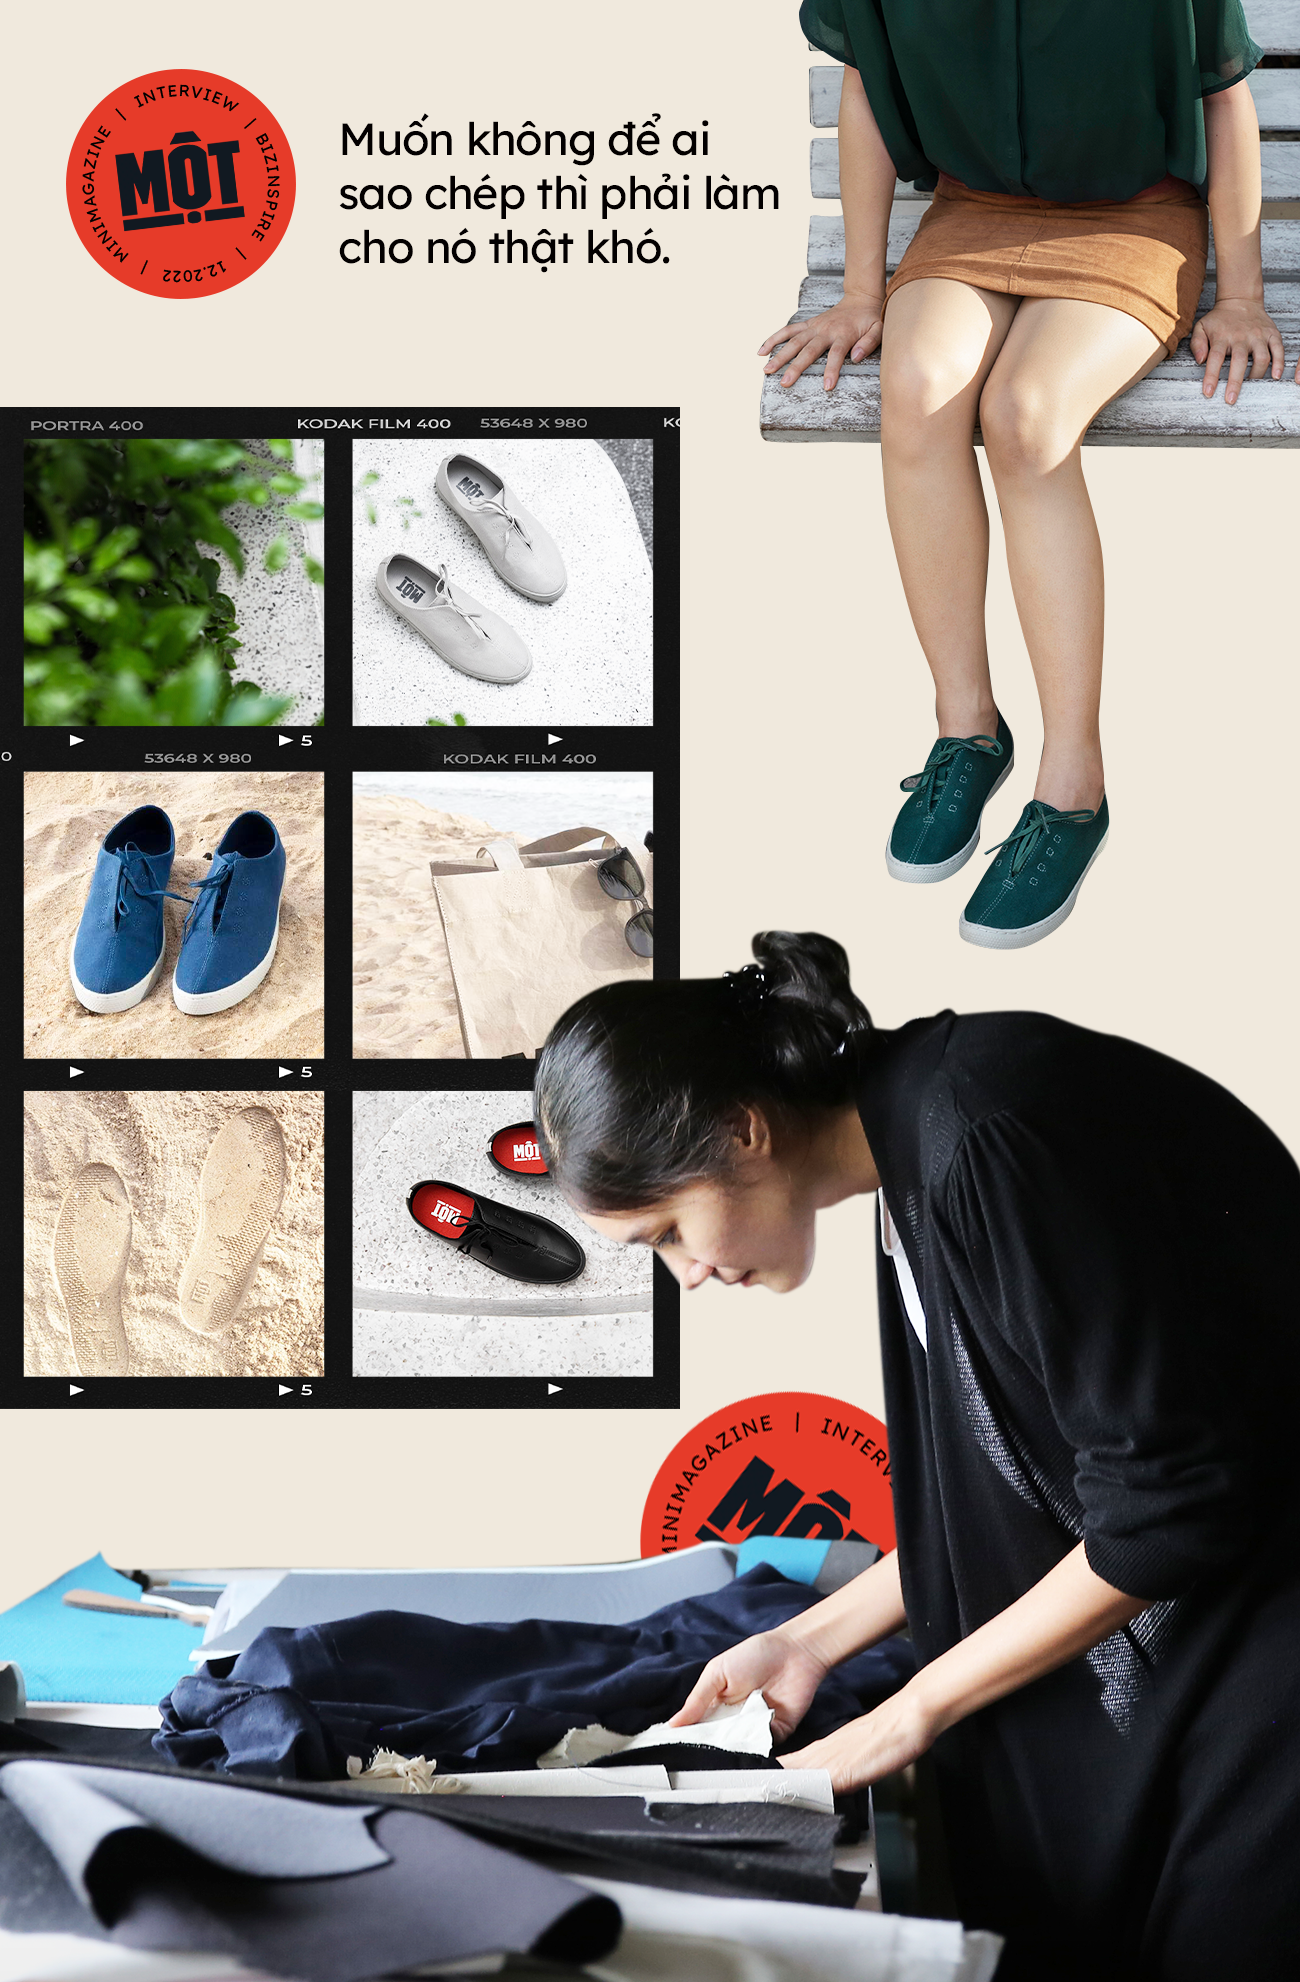 Co-Founder giày Một “made in Việt Nam” kể chuyện 4 năm chỉ sản xuất duy nhất 1 mẫu giày, ai cũng có thể đi vào chân và tuyệt đối không thể sao chép vì… quá khó - Ảnh 5.